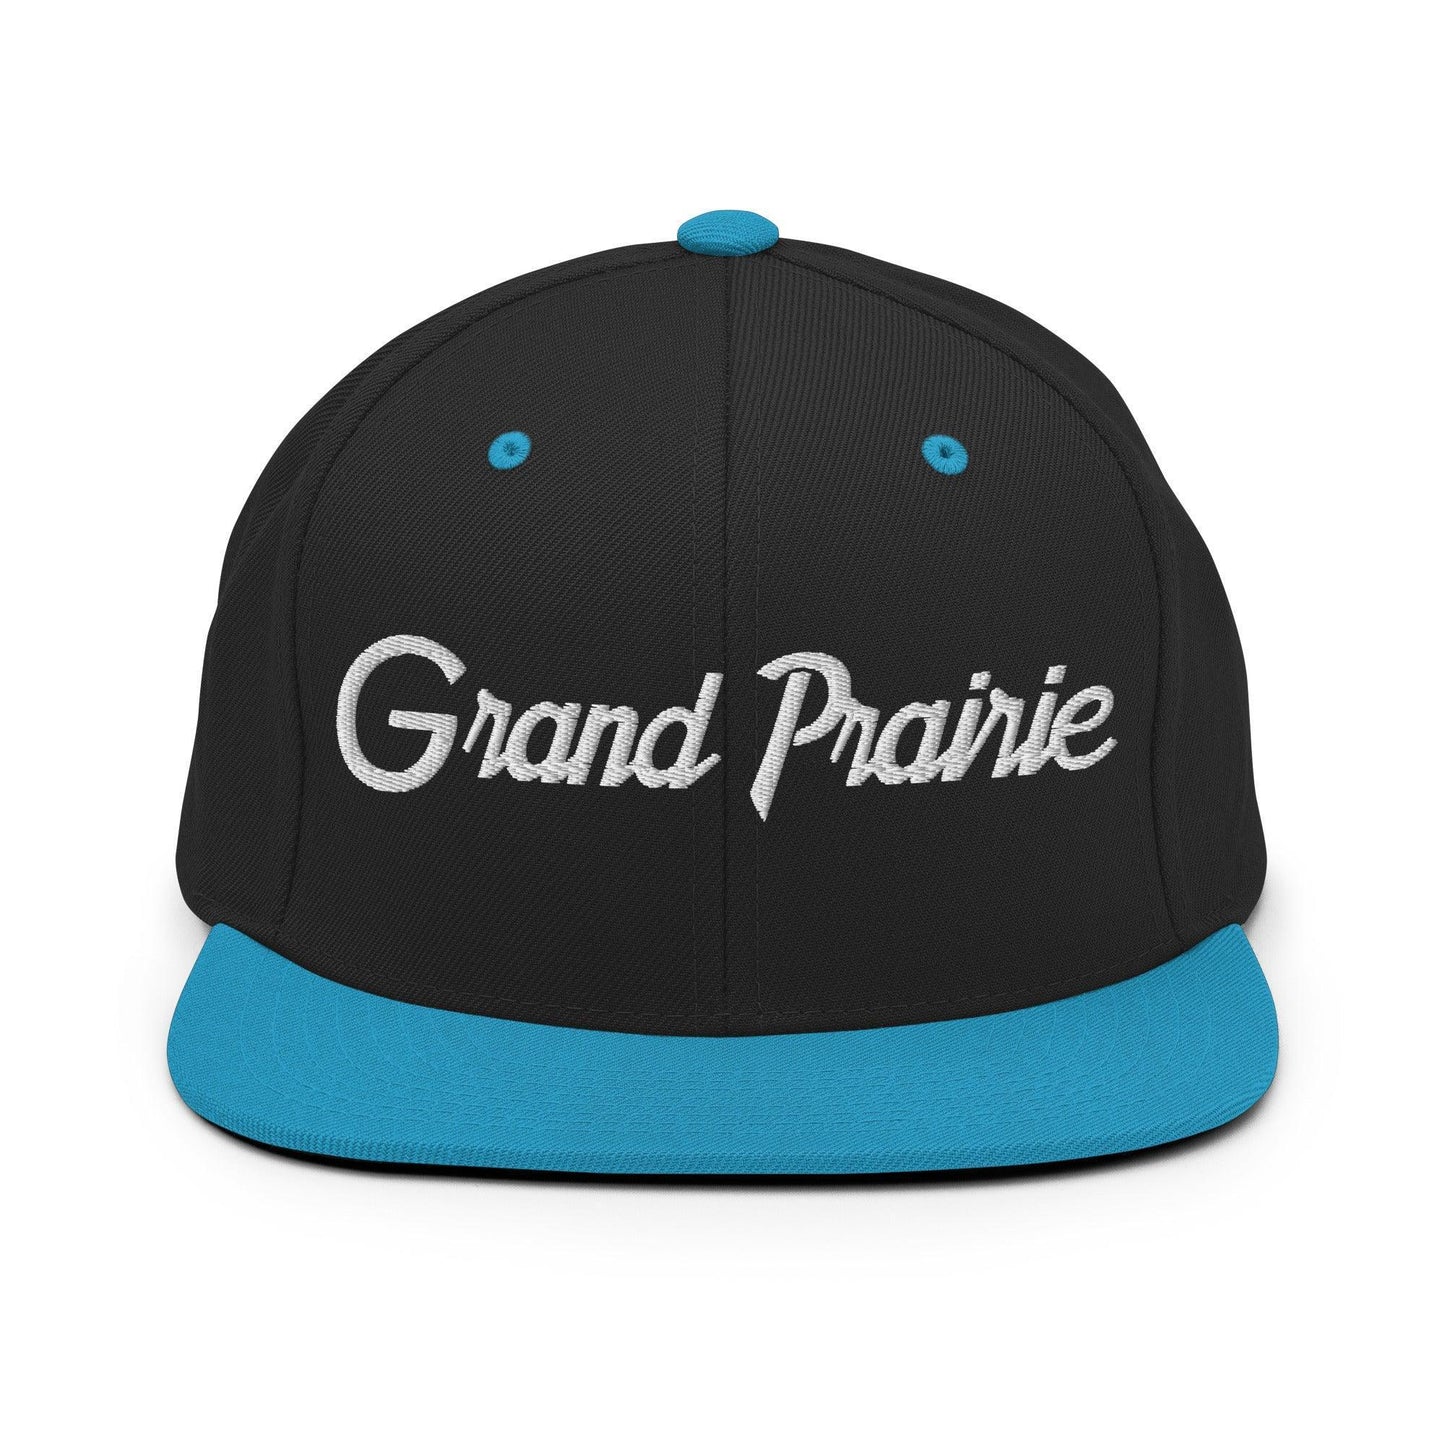 Grand Prairie Script Snapback Hat Black Teal